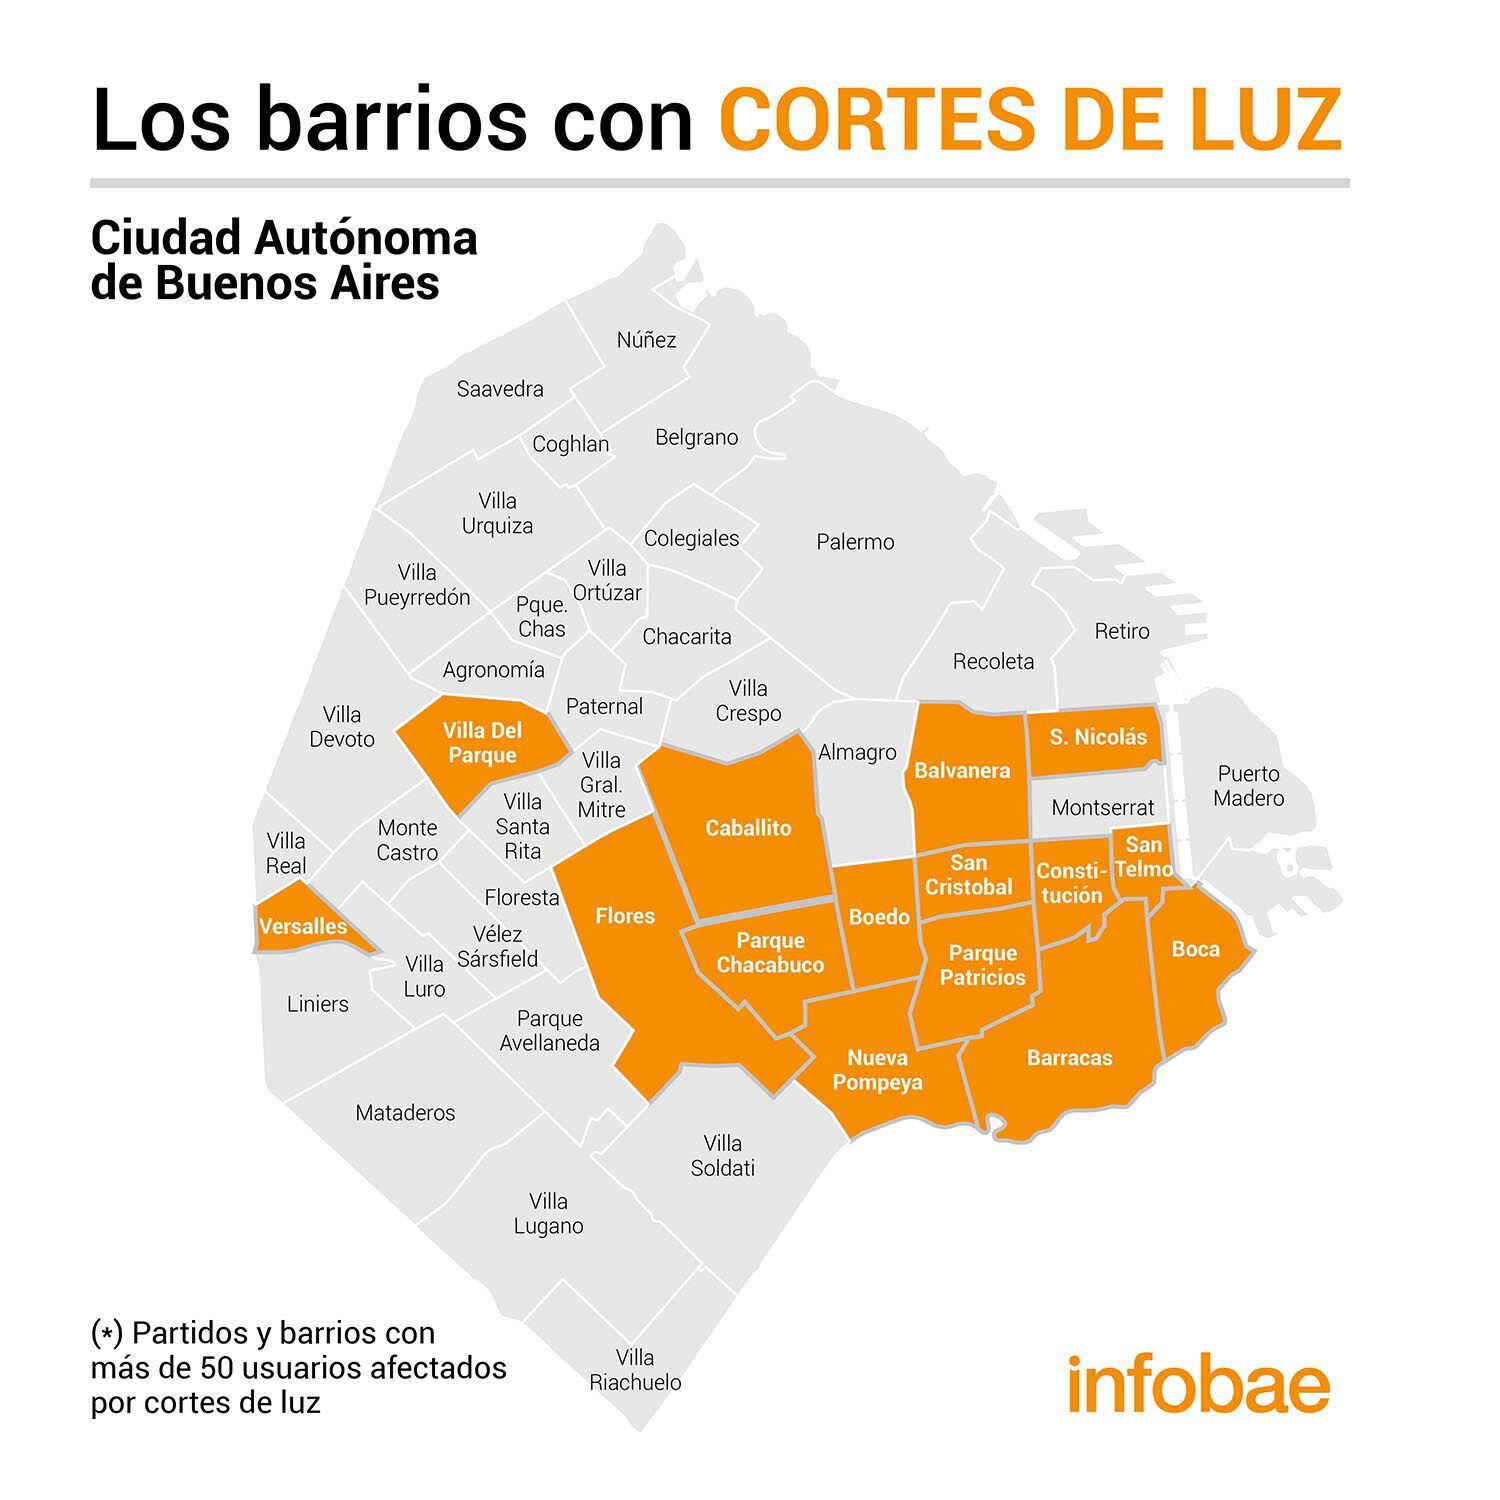 Los barrios afectados en la ciudad de Buenos Aires con cortes de luz